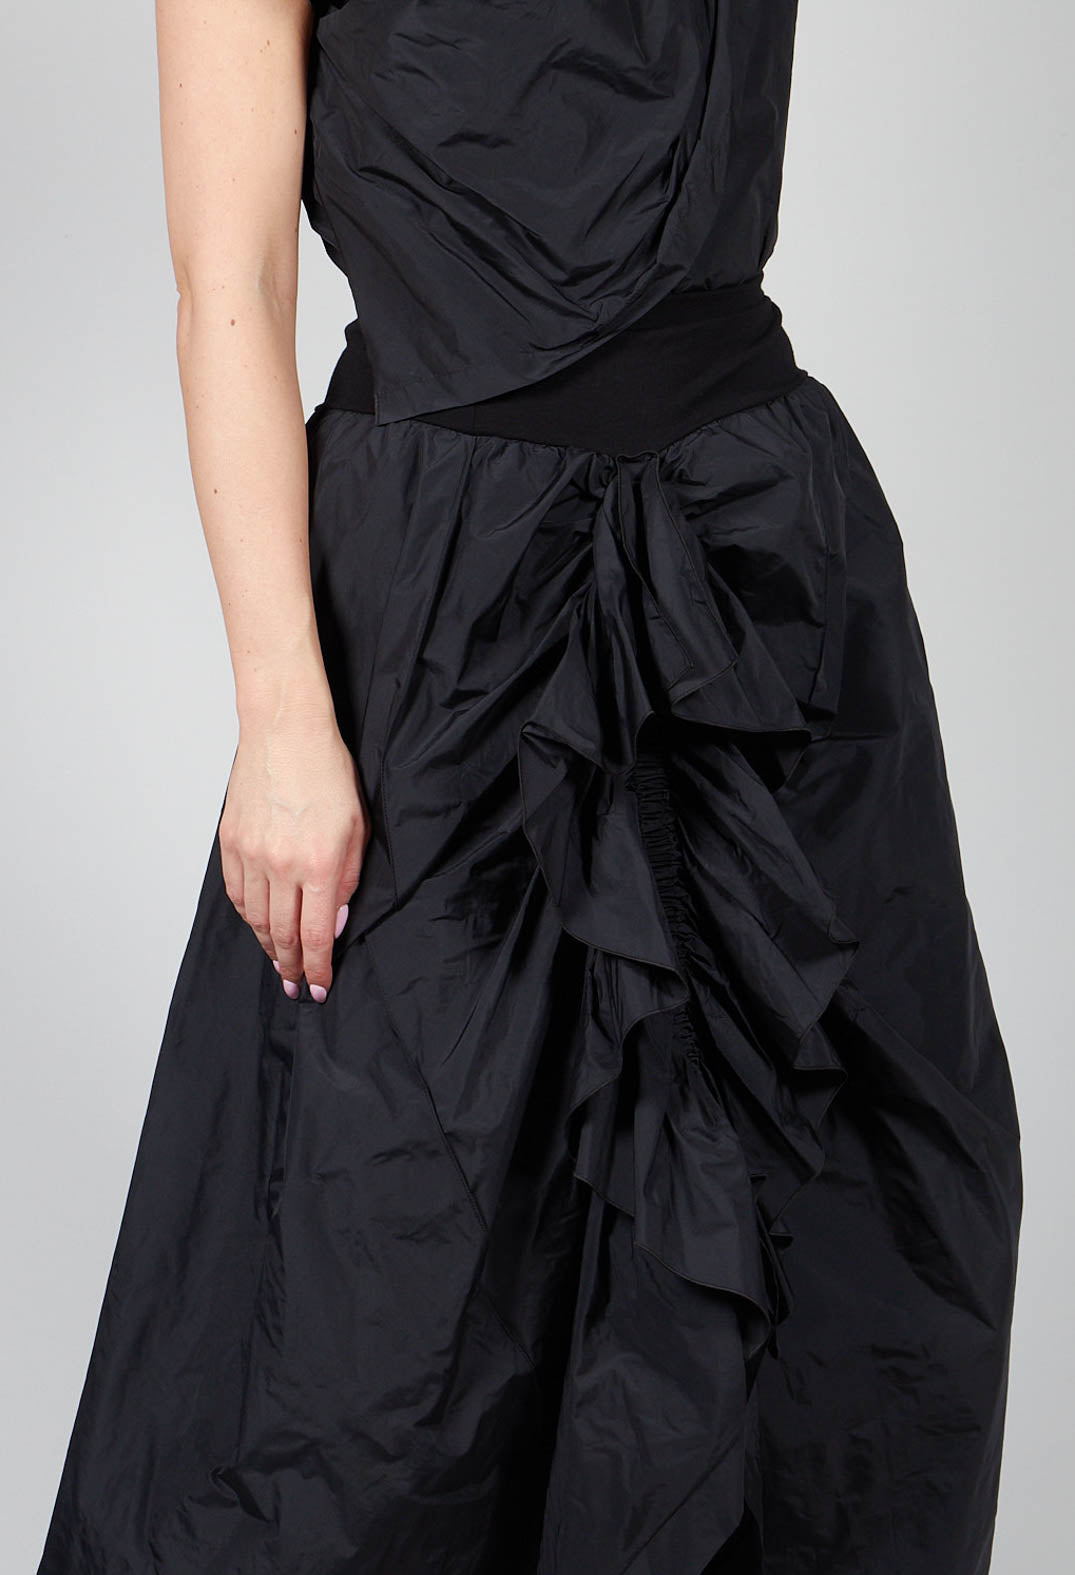 ORDI Skirt in Black